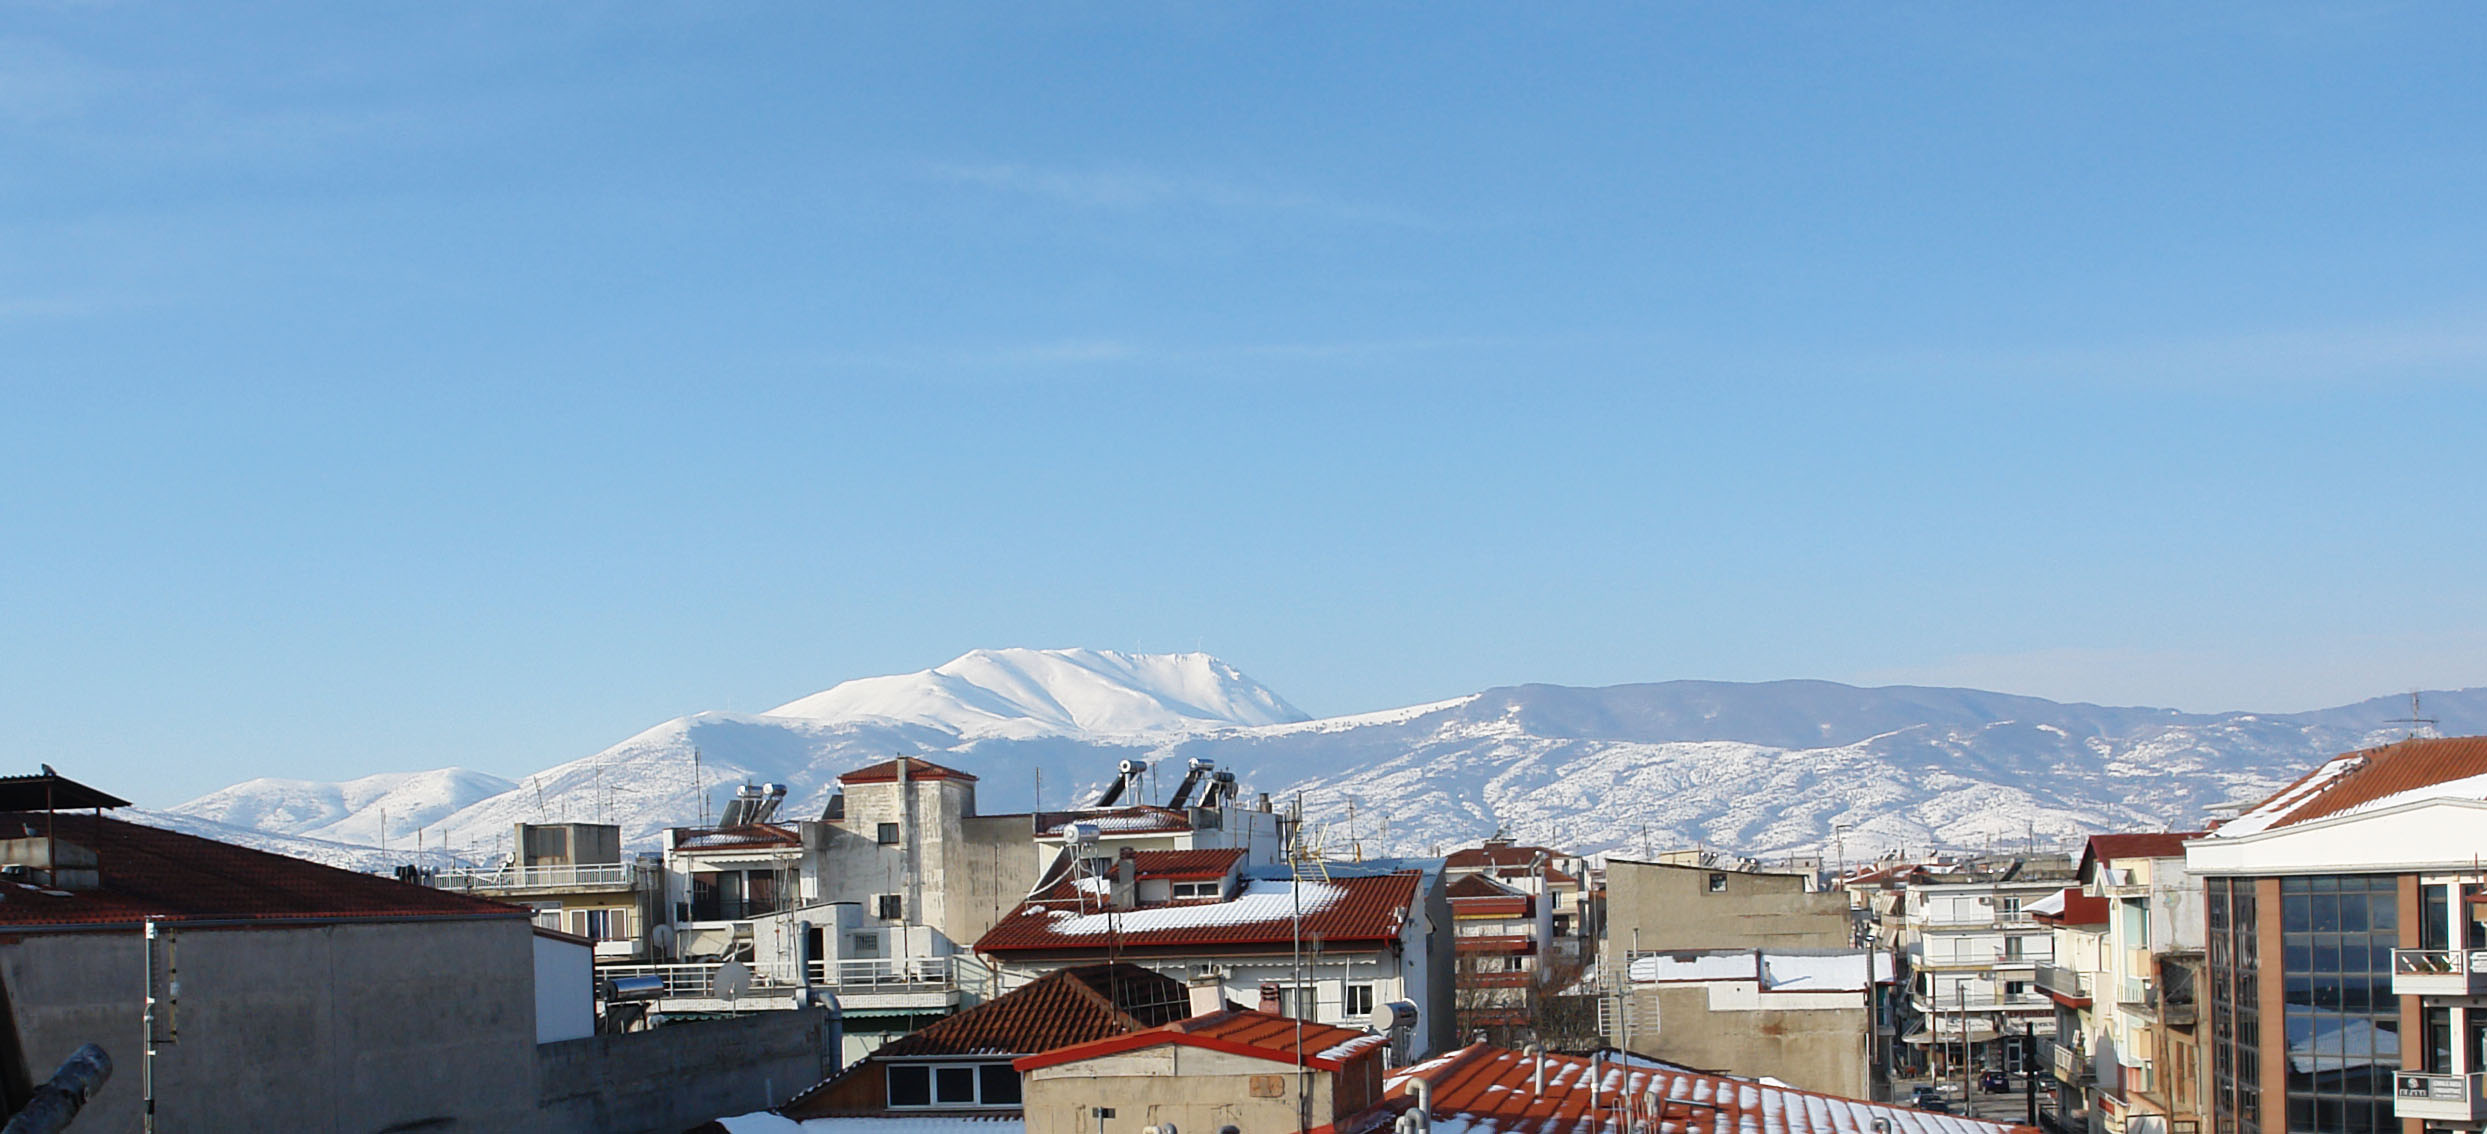 Παρατηρητήριον Σινιάτσκου, Βαρυφορτωμένο με χιόνια τα οποία καταλήγουν στα χωριά Άρδασσα-Κρυόβρυση-Αναρράχη στις παρυφές Μουρικίου